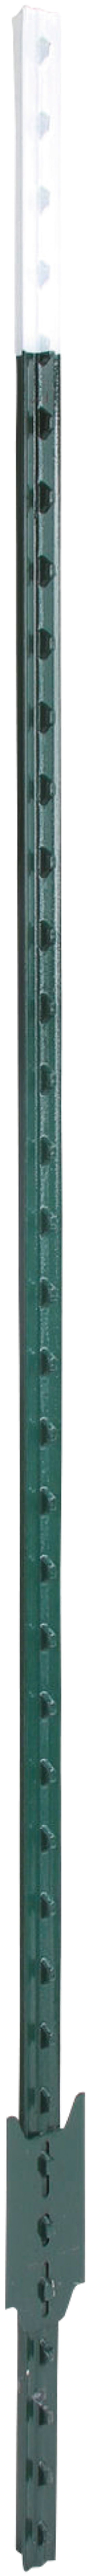 Metallpfahl T-Post grün/weiß, 152 cm